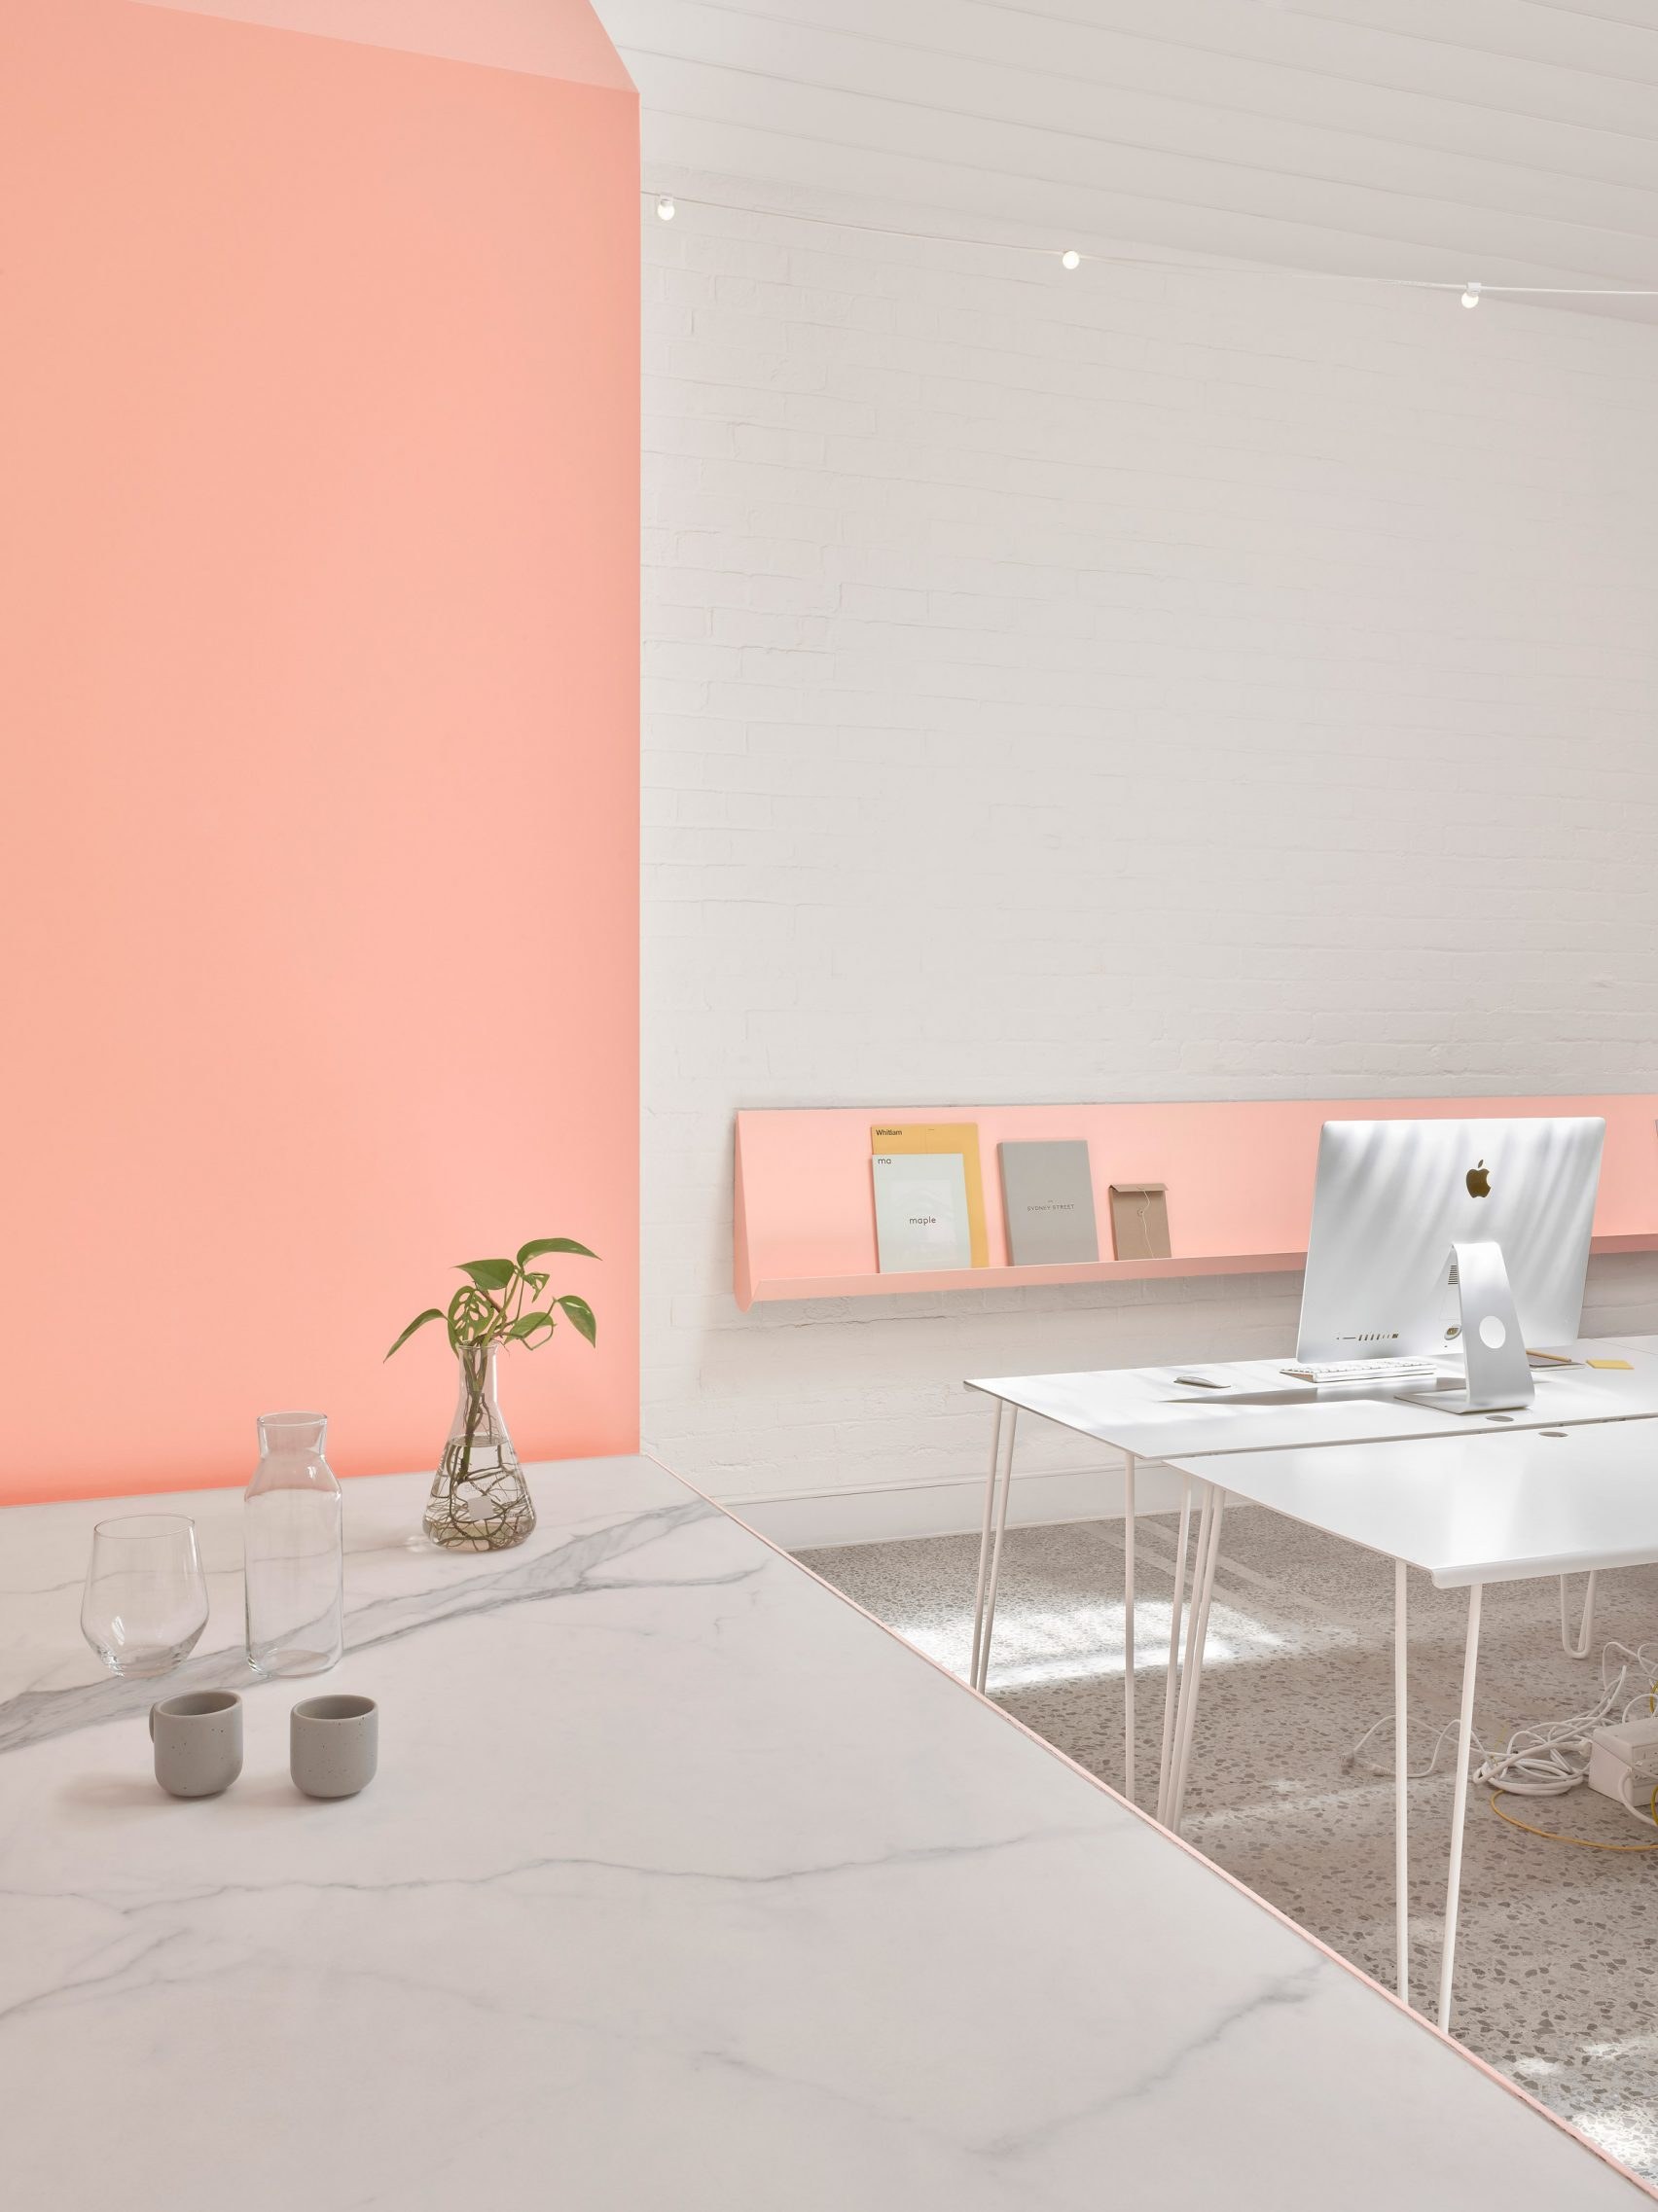 Обои персикового цвета: виды, идеи дизайна, сочетание с шторами и мебелью